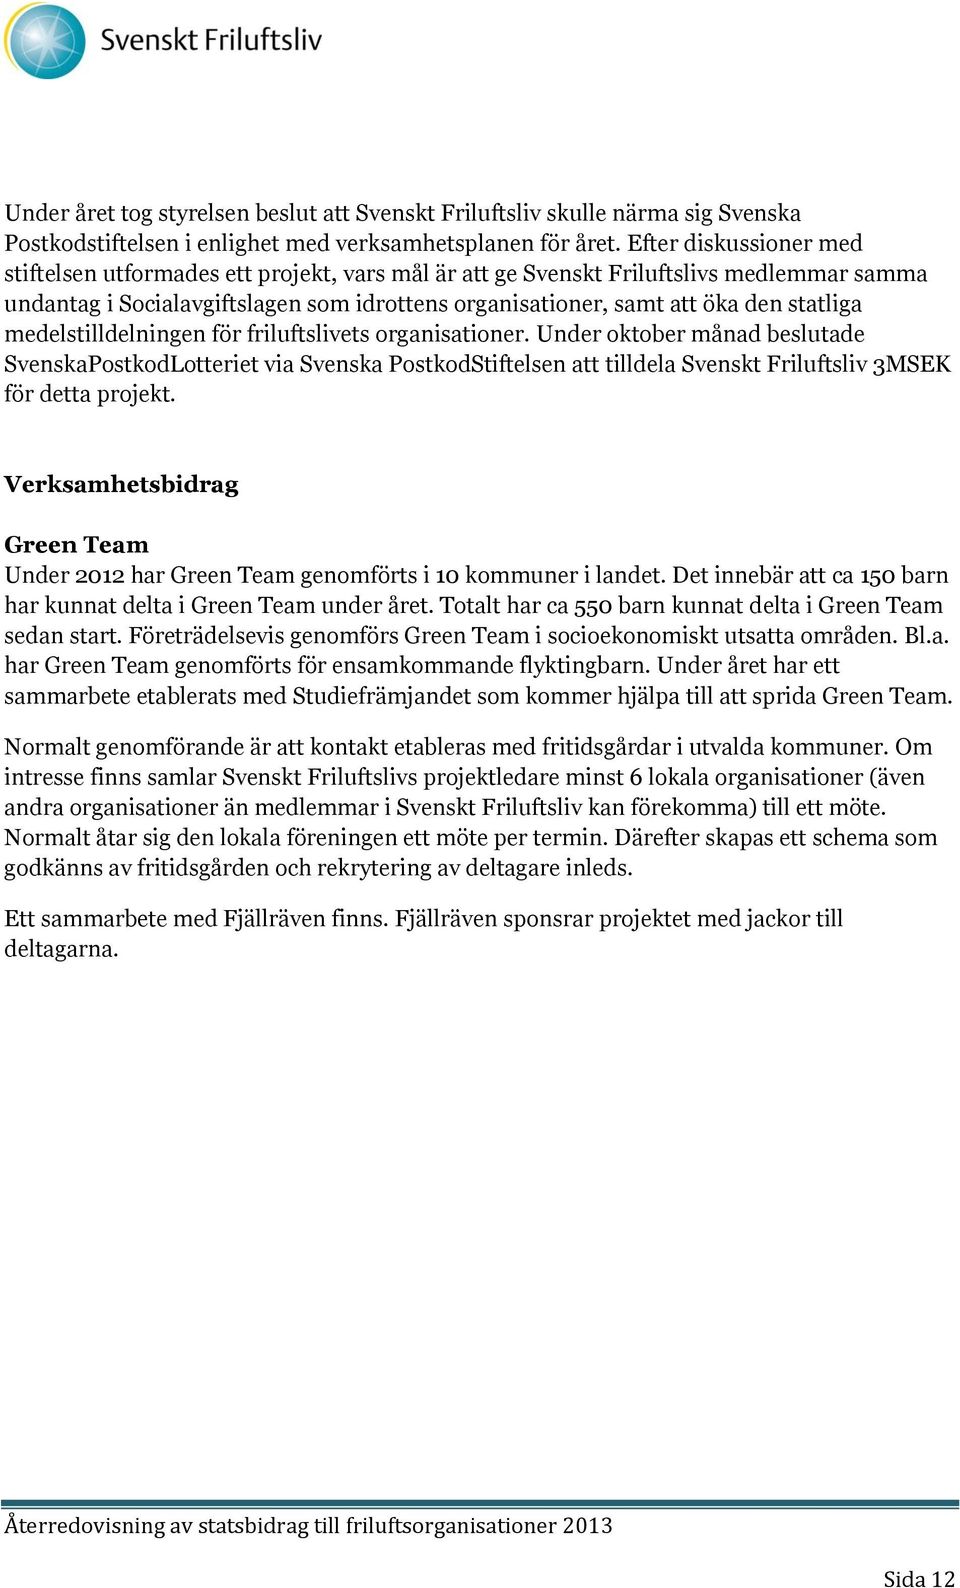 medelstilldelningen för friluftslivets organisationer. Under oktober månad beslutade SvenskaPostkodLotteriet via Svenska PostkodStiftelsen att tilldela Svenskt Friluftsliv 3MSEK för detta projekt.